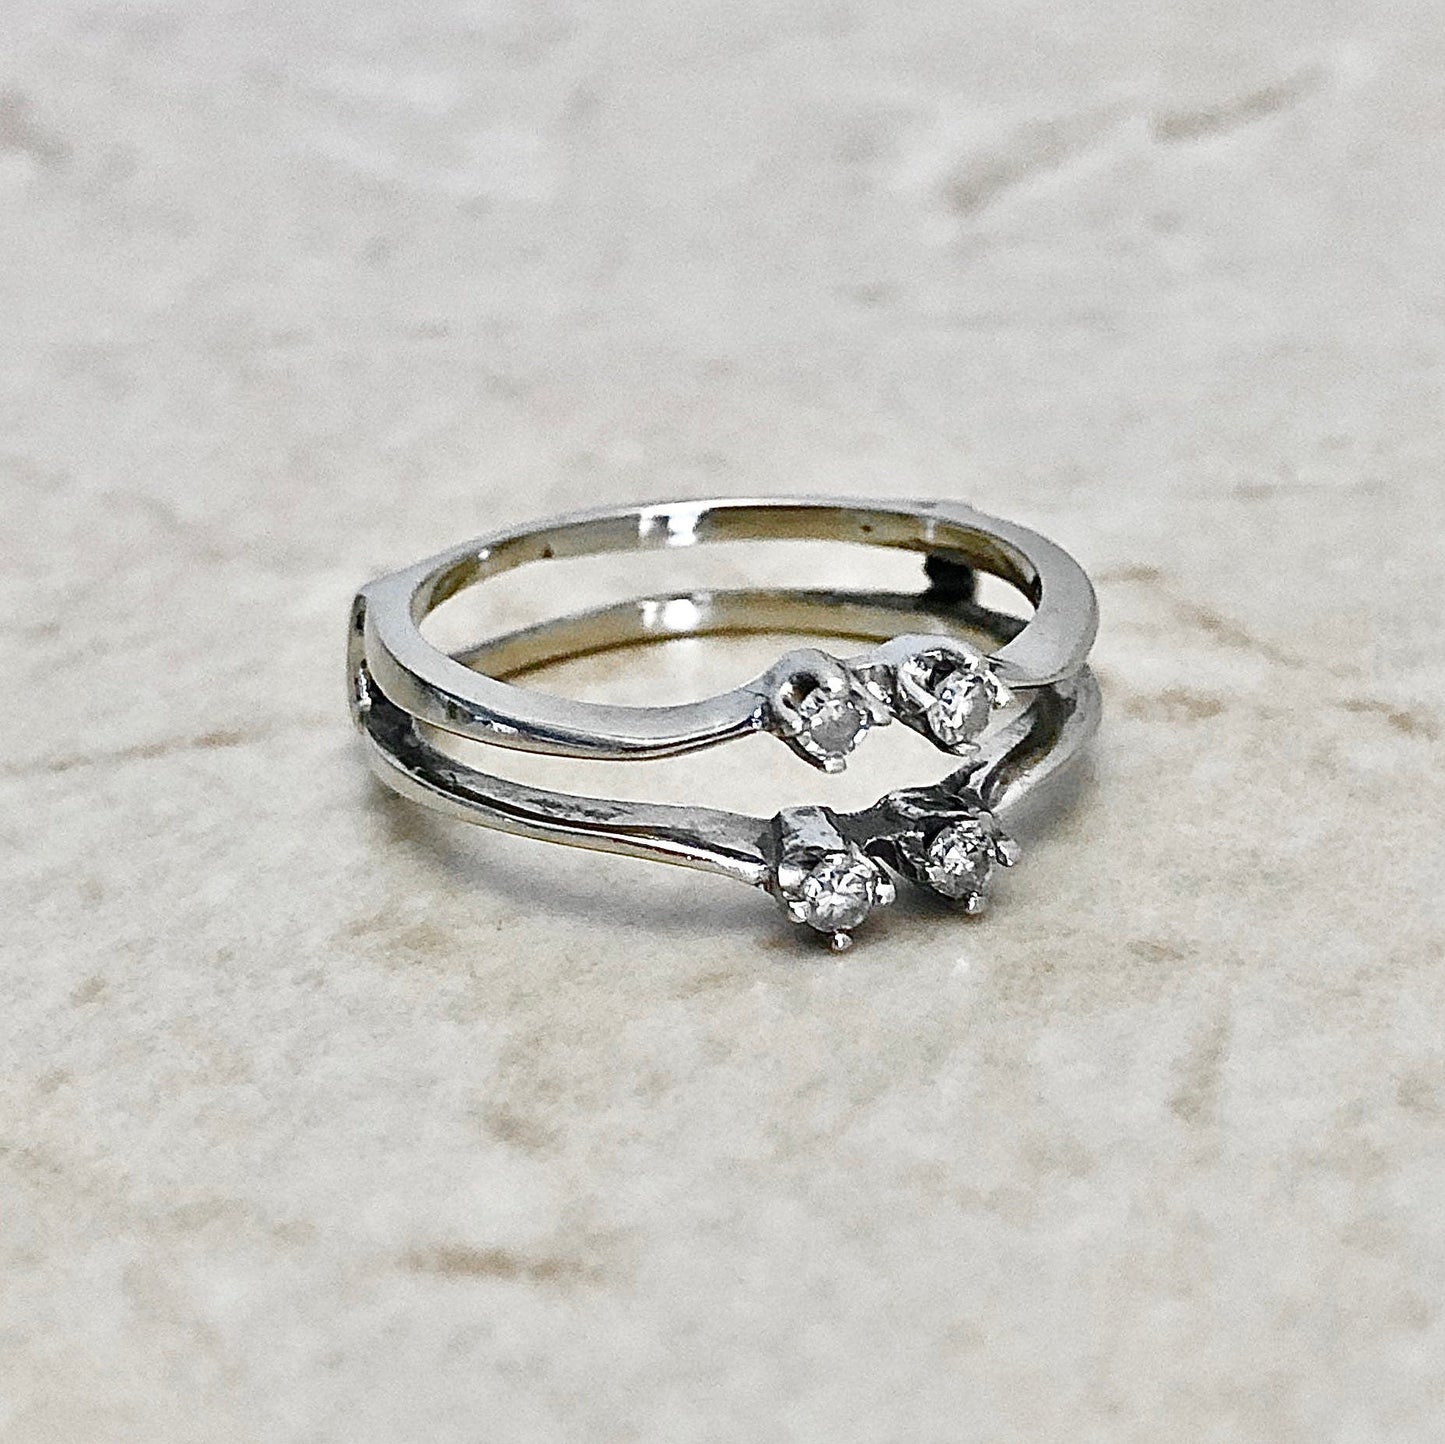 Vintage 14K White Gold Diamond Engagement Ring & Ring Jacket Set - White Gold Diamond Solitaire - Diamond Wedding Set - Bridal Ring